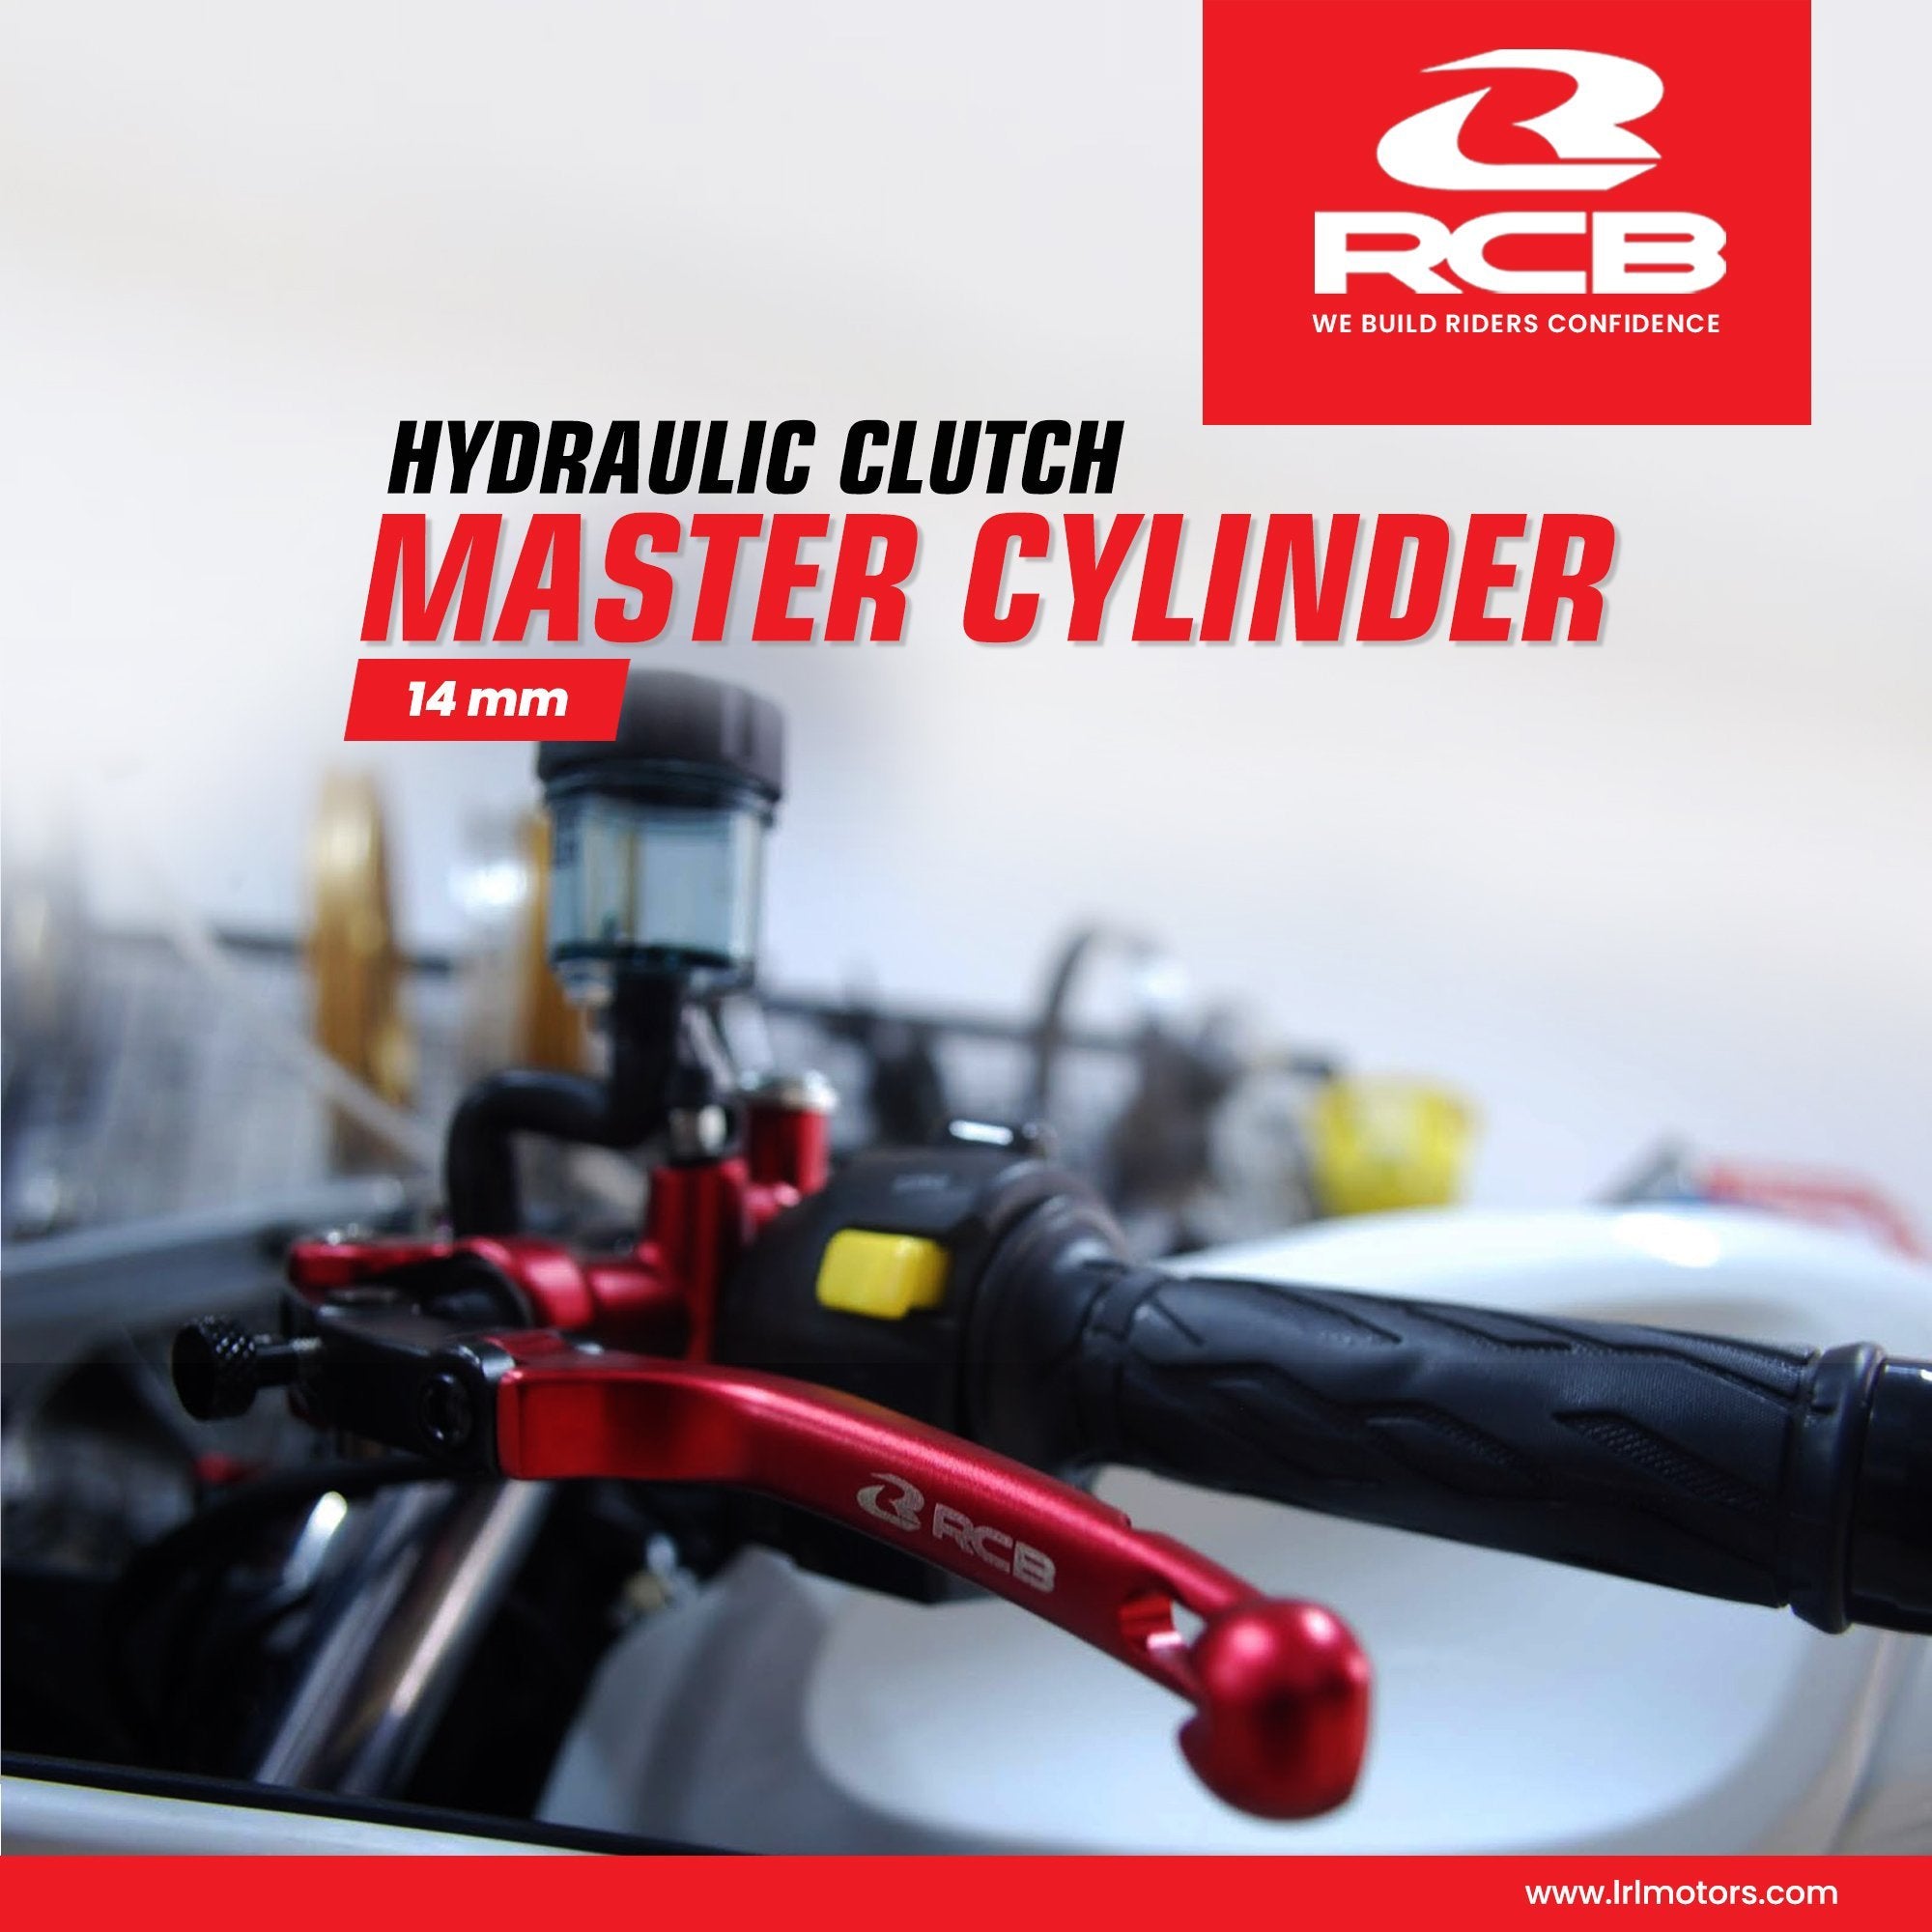 Racing Boy (RCB) Hydraulic Clutch Master Cylinder S1 14MM (LH